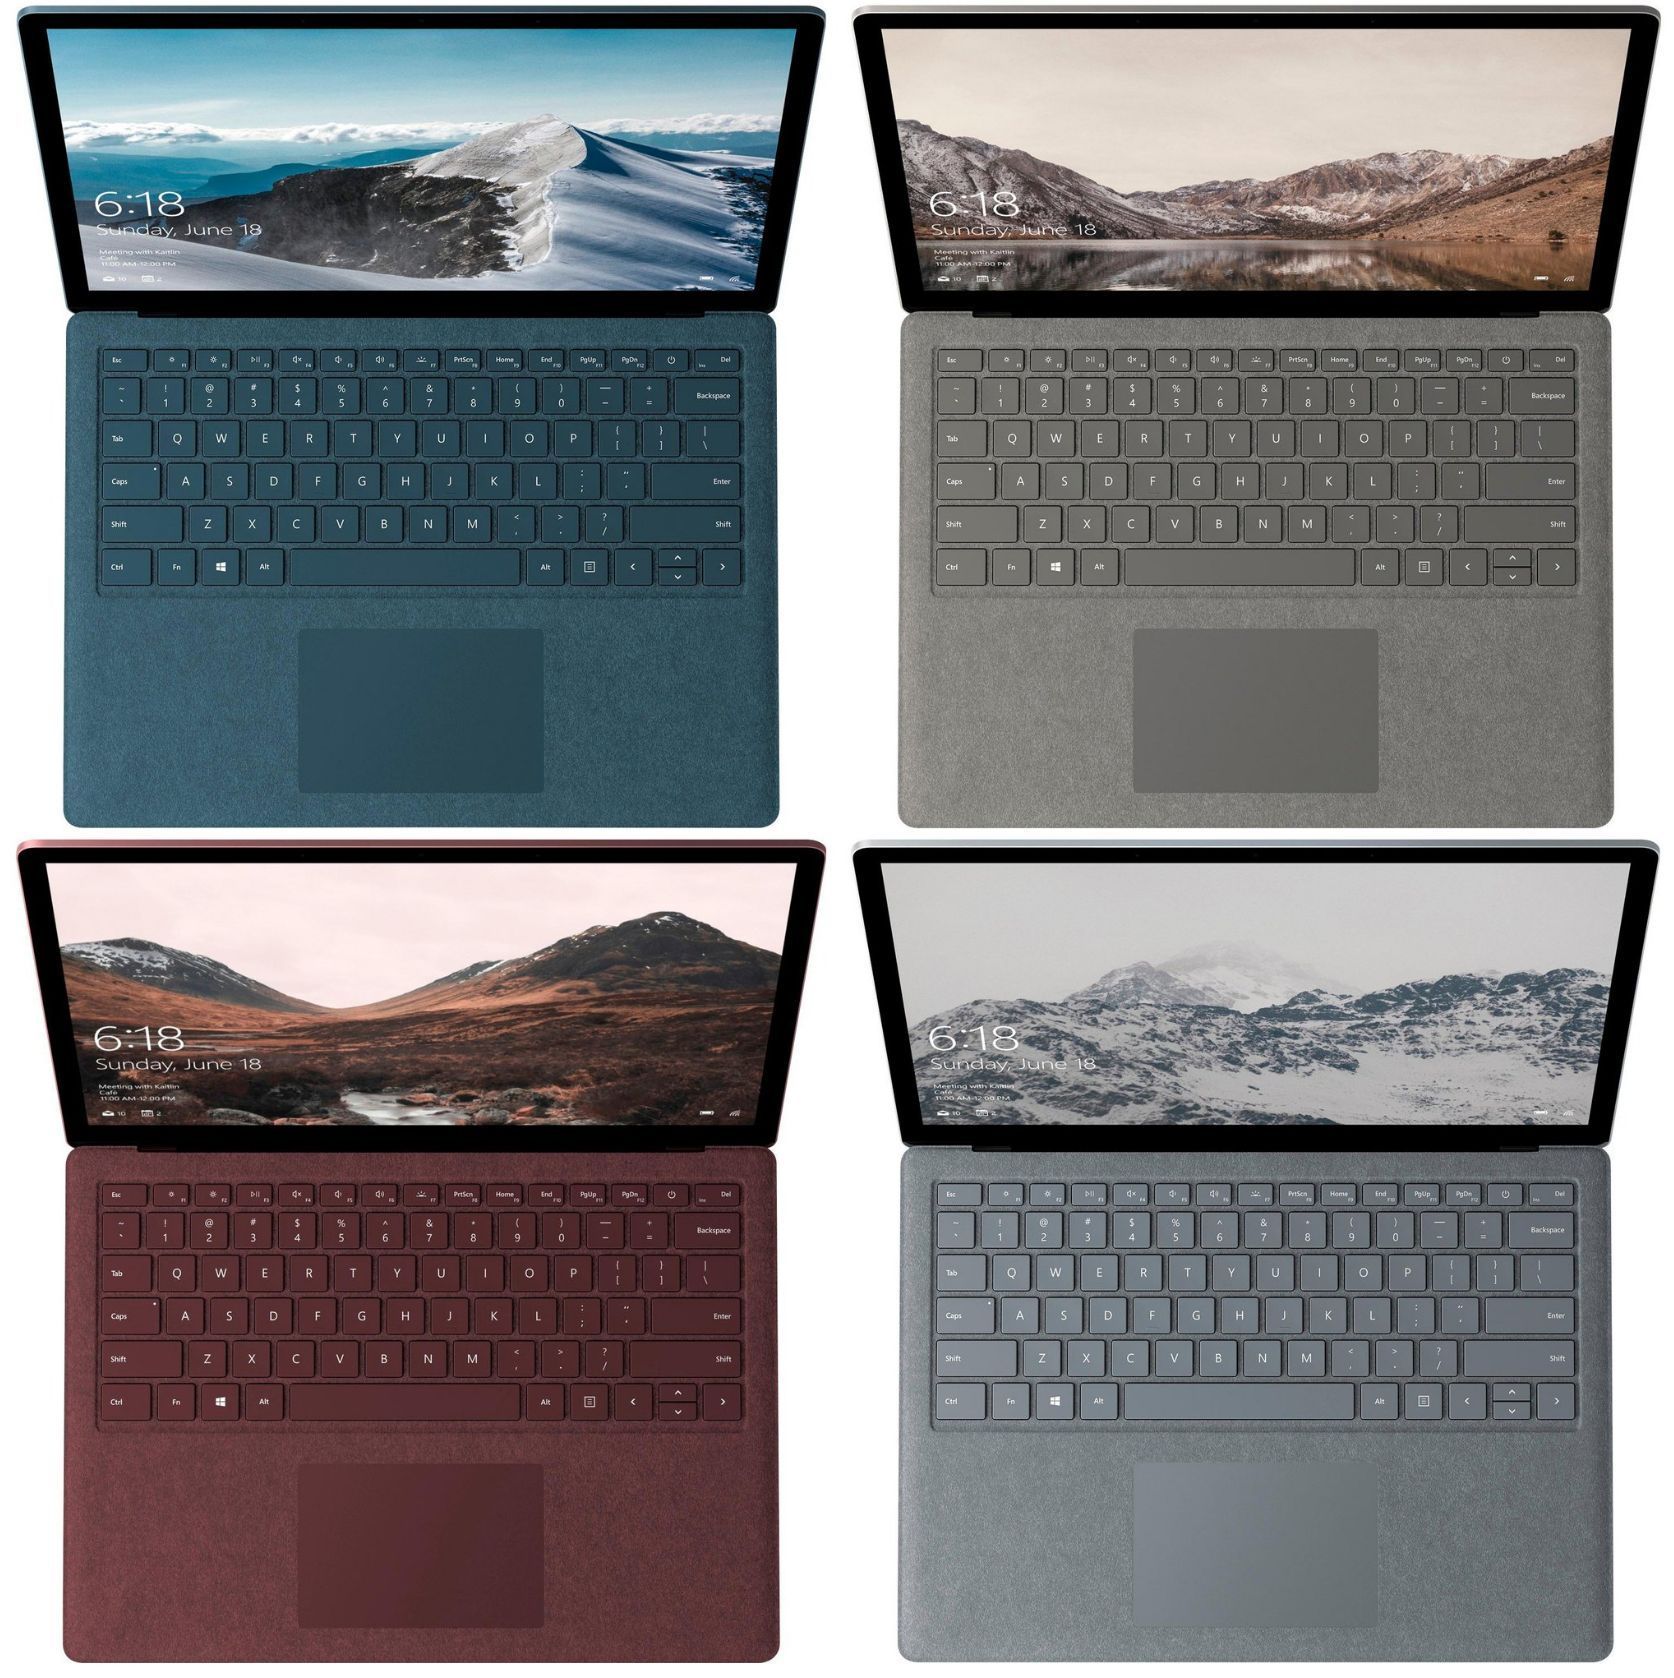 Surface Pro 4 vs. Surface Go - Detailed Specs Comparison